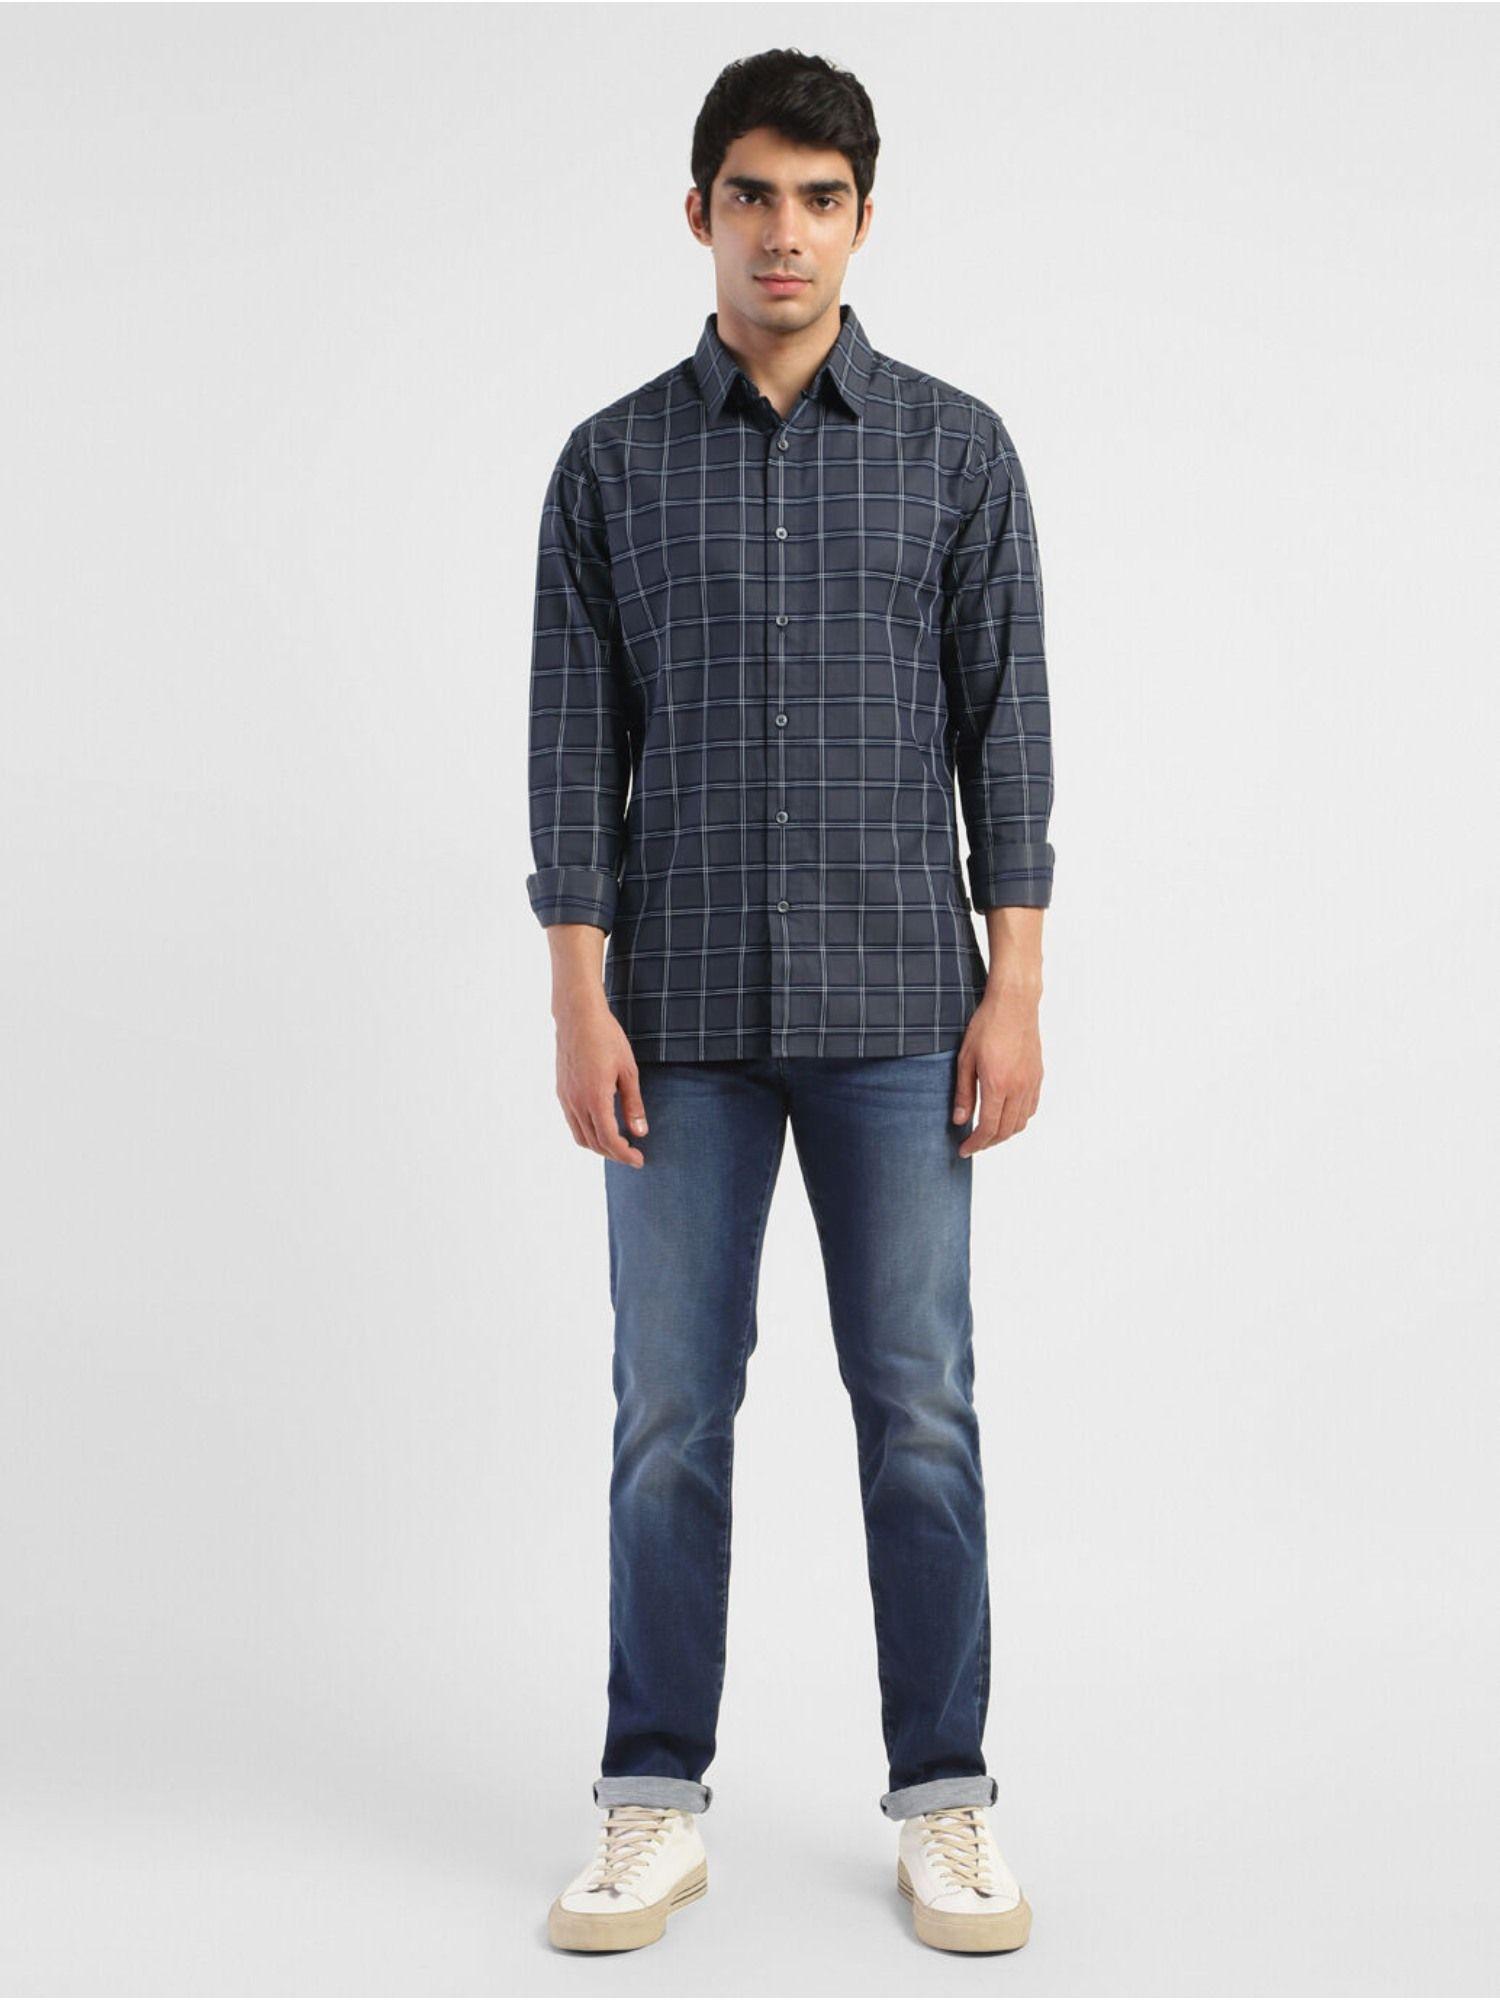 mens-checkered-spread-collar-shirt